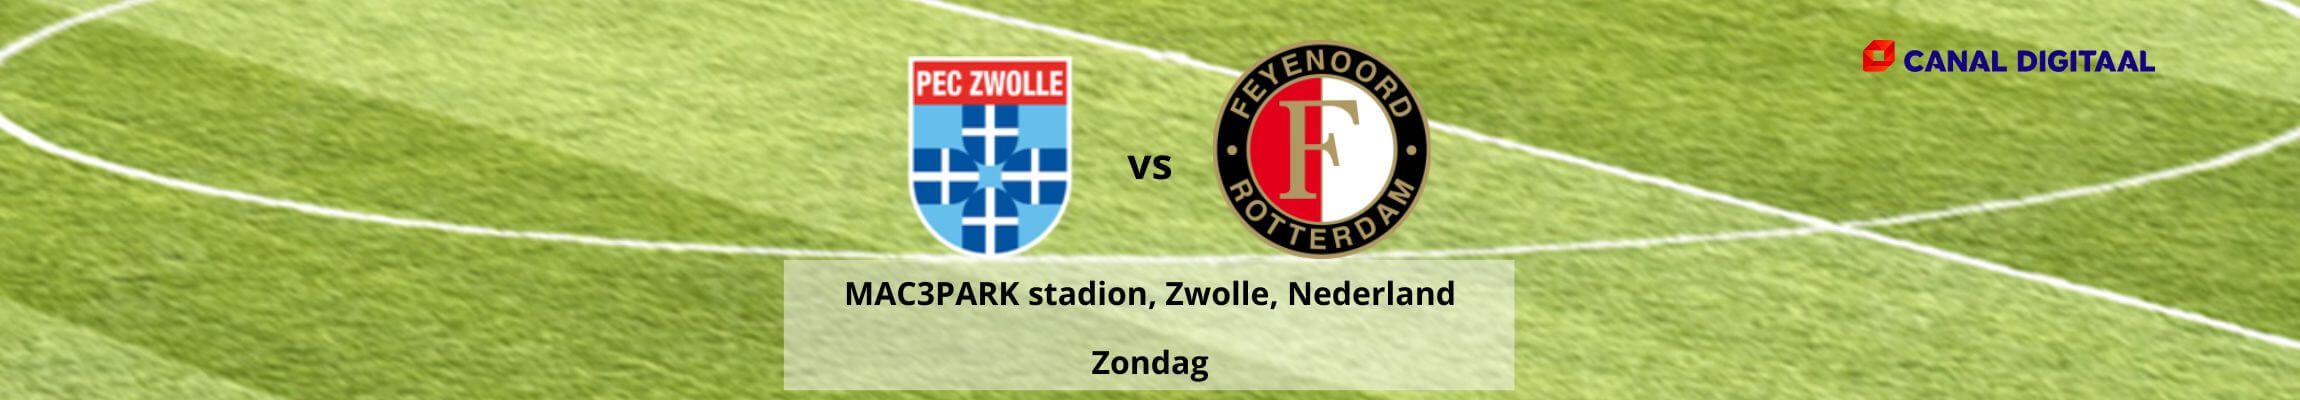 PEC Zwolle vs Feyenoord Rotterdam